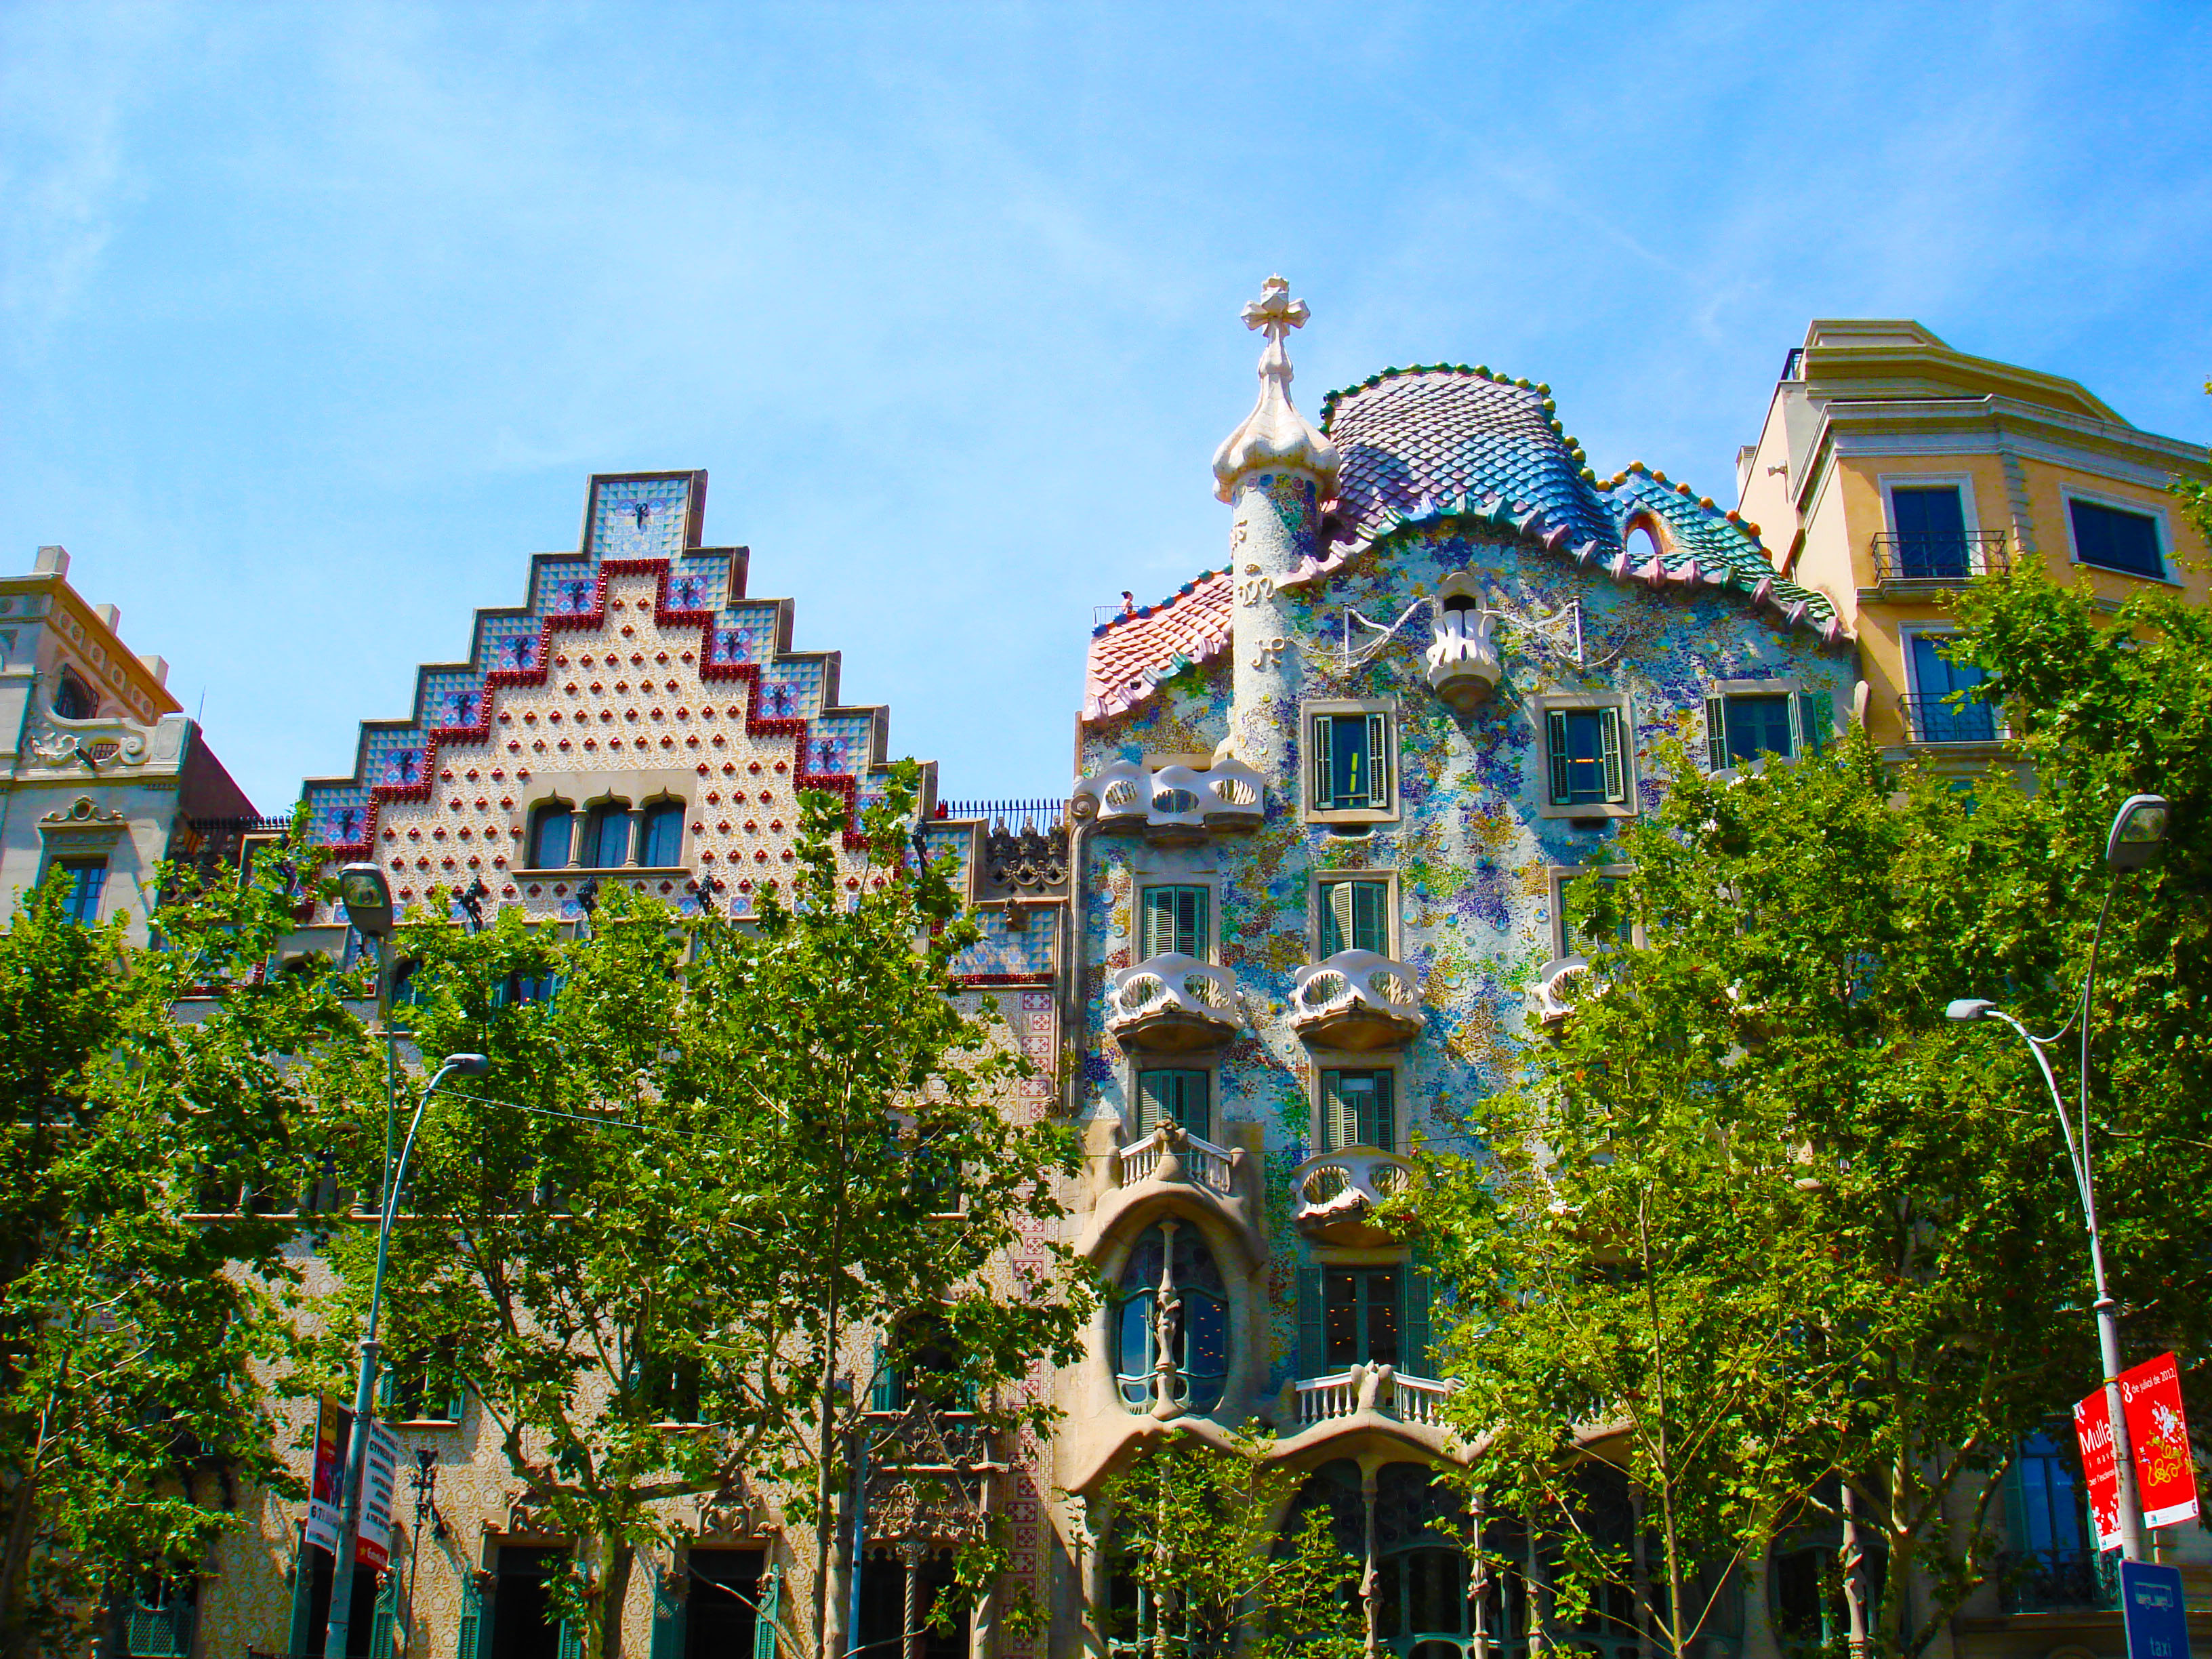 Casa Battlo Barselona şehrindeki bir başka Gaudi eseri